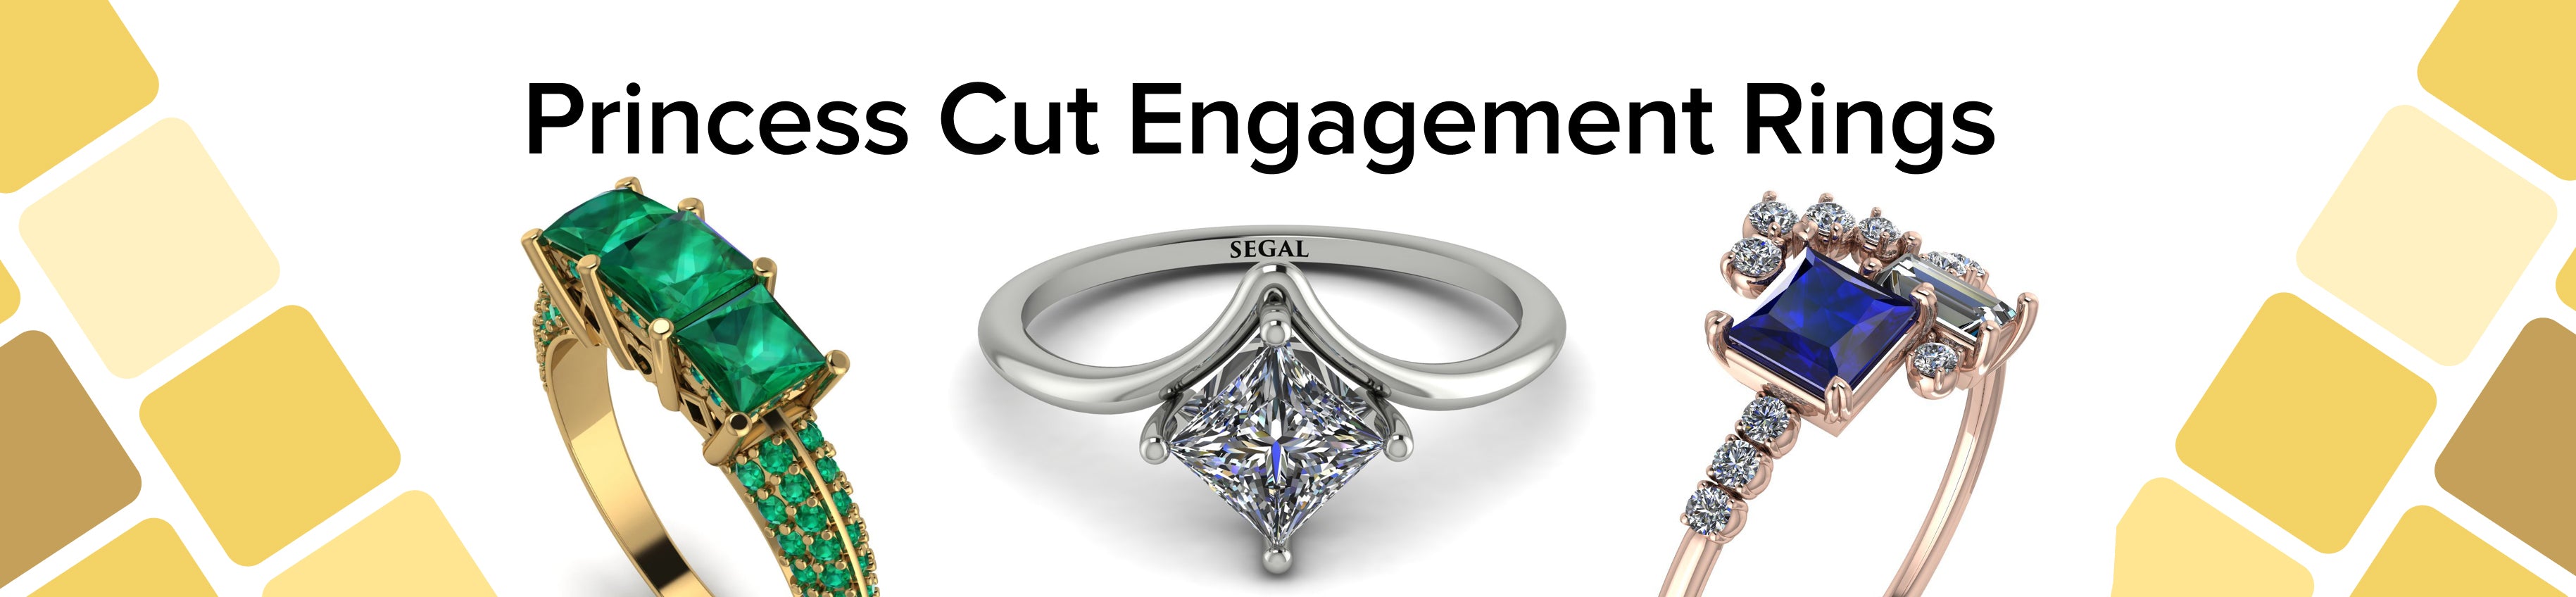 Princess Cut Engagement Rings Banner